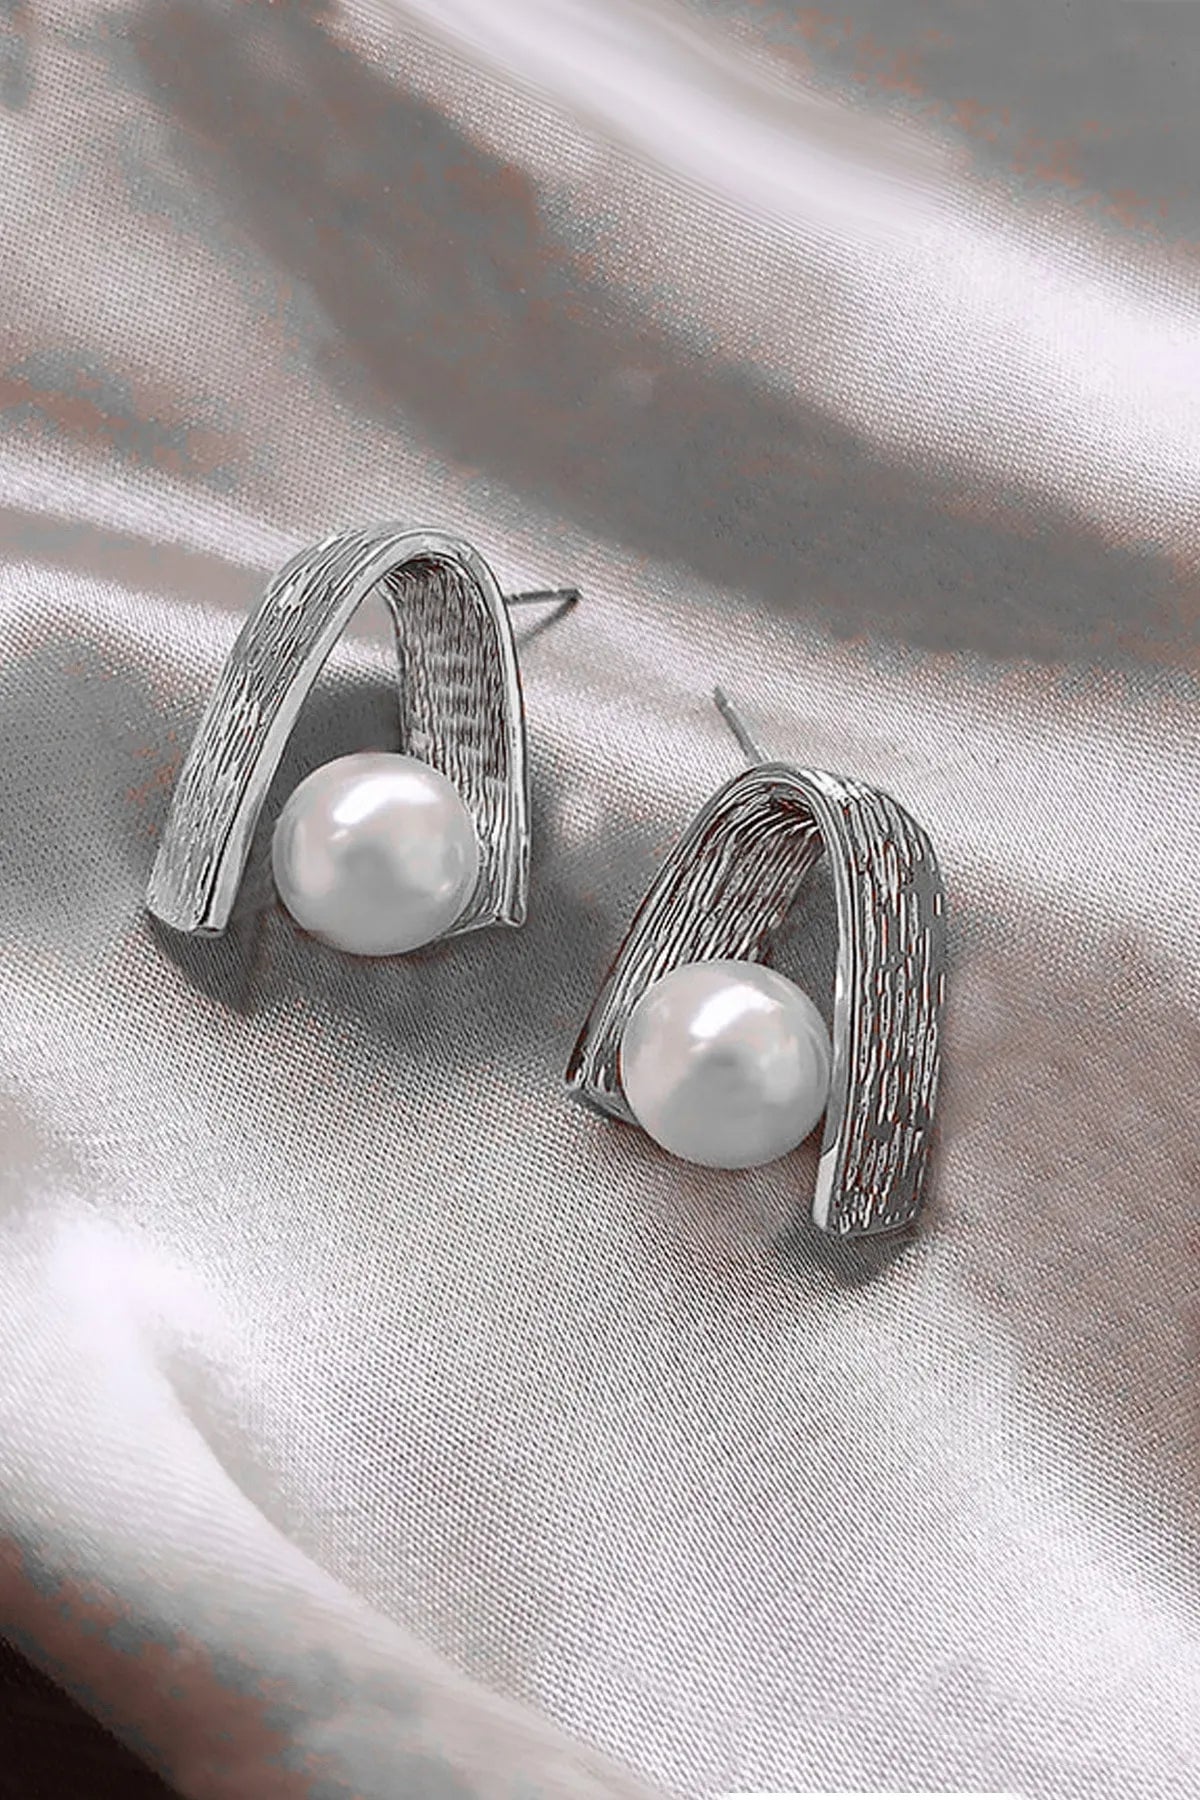 Elegant Pearl Design Silver Earrings for Women - Convertible Link Hoop Earrings